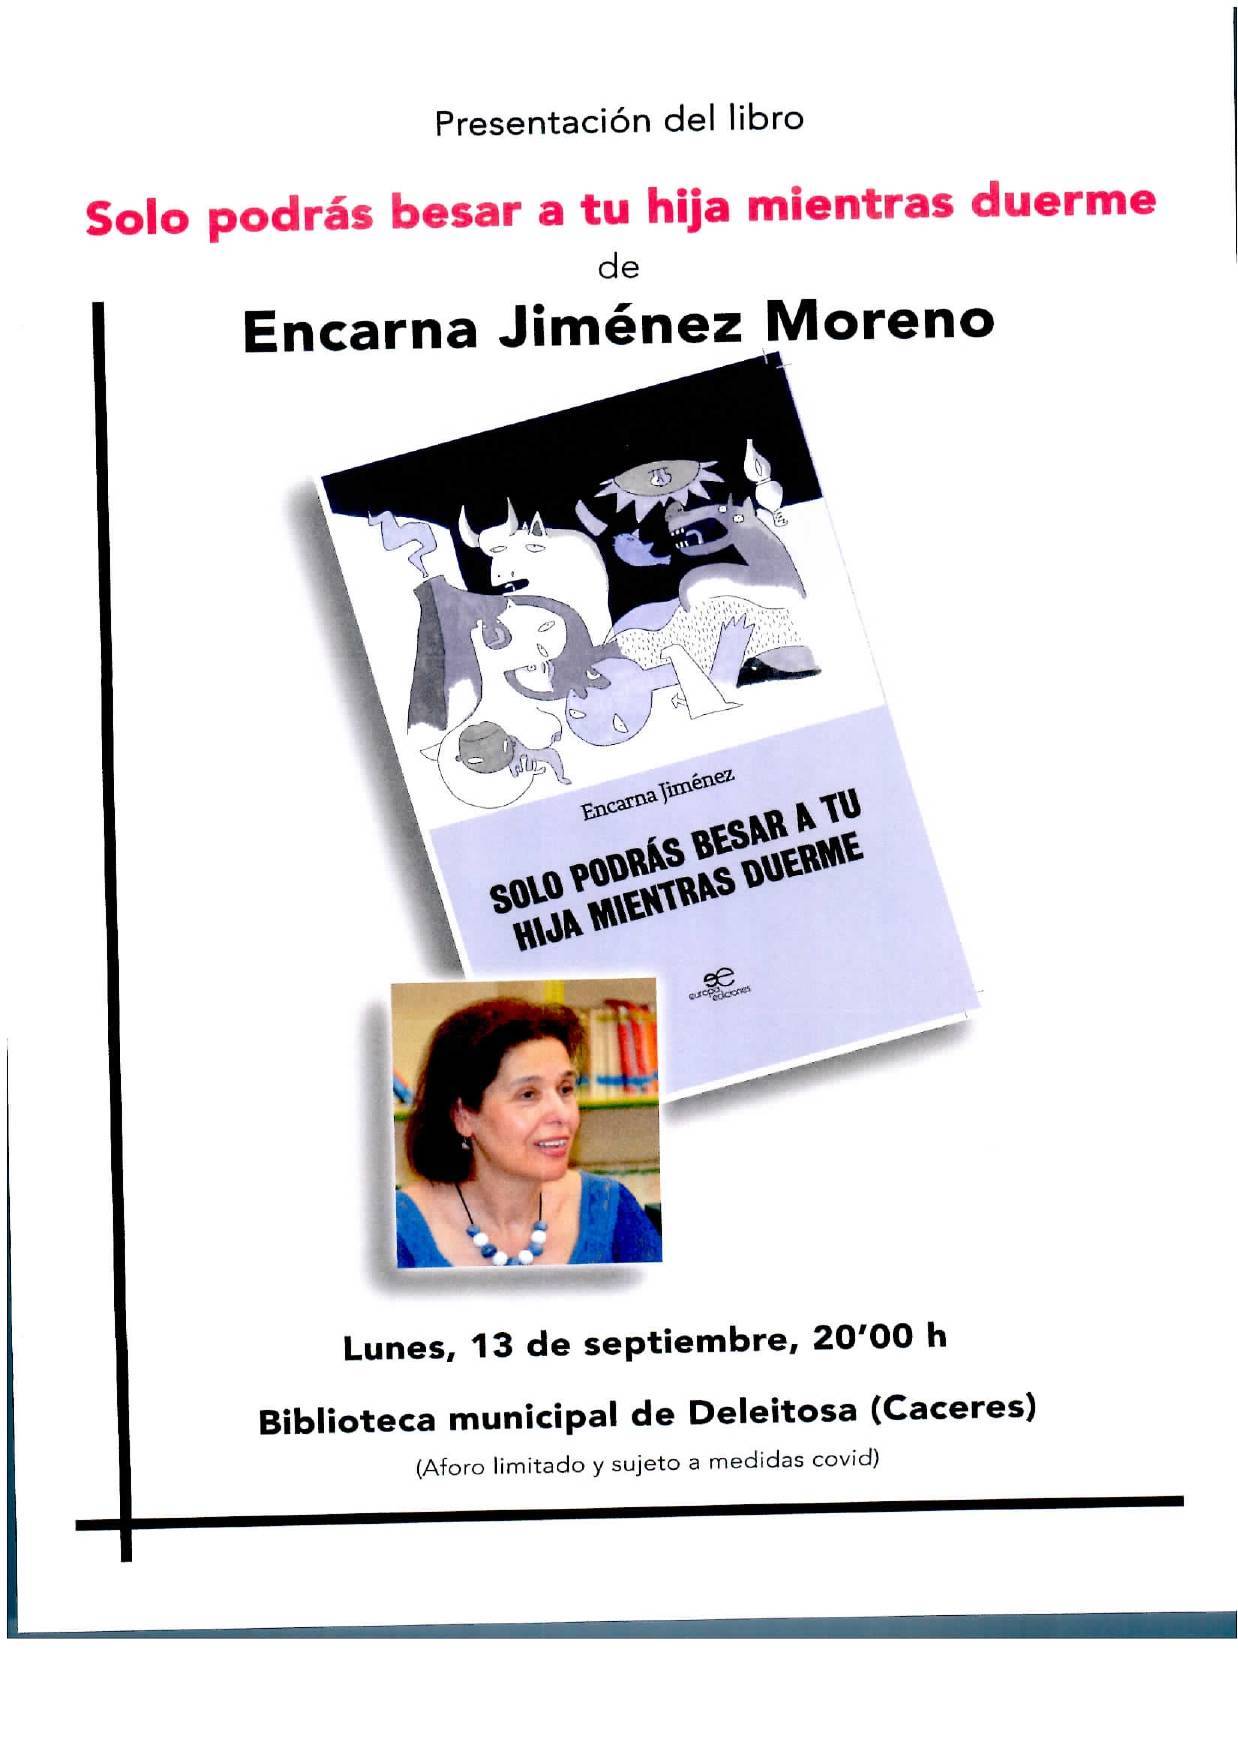 Presentación del libro 'Solo podrás besar a tu hija mientras duerme' (2021) - Deleitosa (Cáceres)